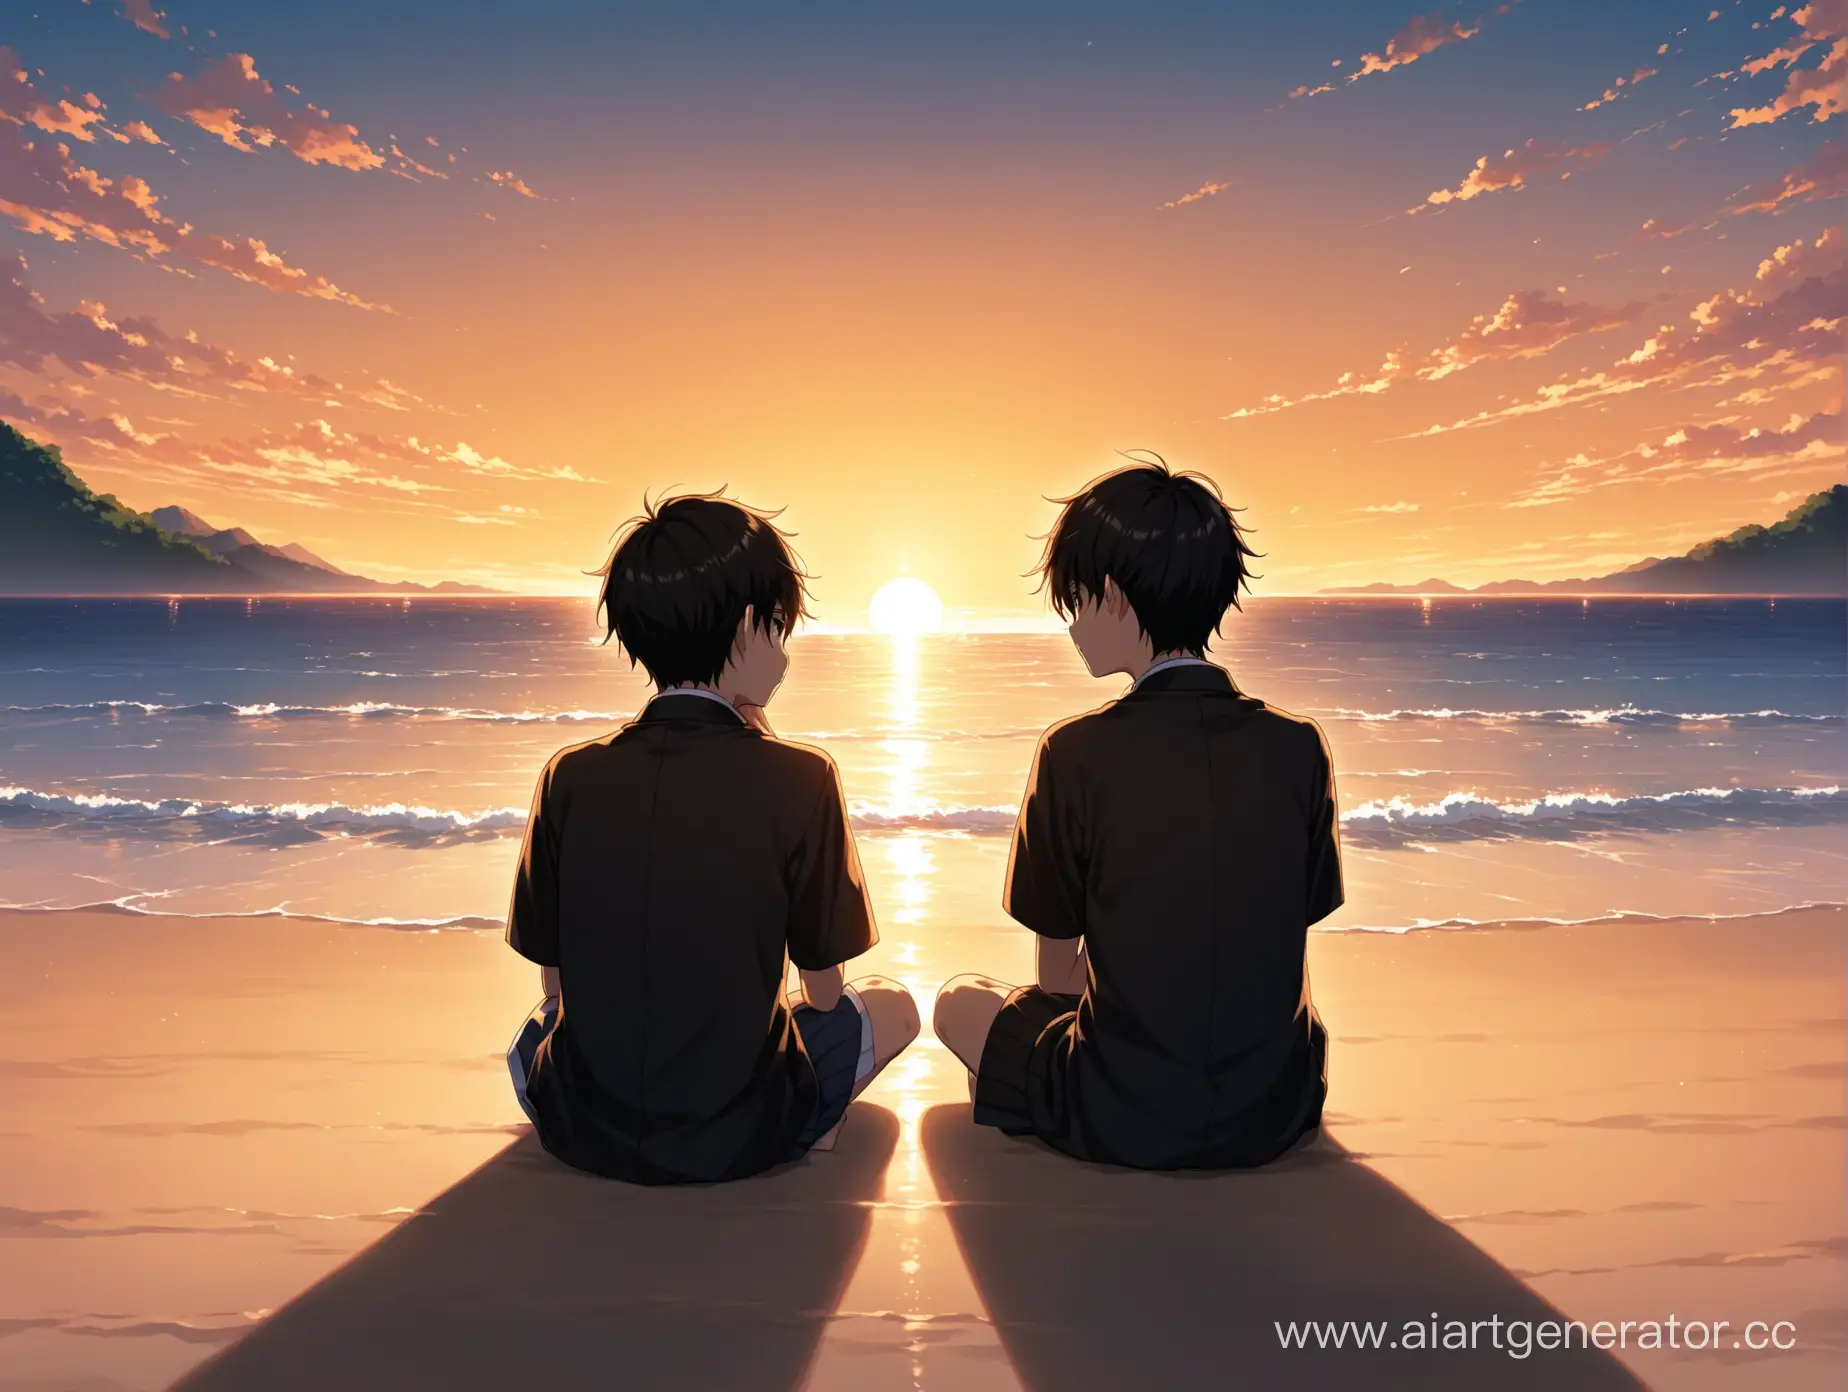 два японских школьника сидят на японском пляже, вид сзади. вокруг нет людей, мальчики сидят близко друг к другу, закат. обоим мальчикам 17-18 лет. очень темно. один мальчик достает макушкой до уровня глаз другого